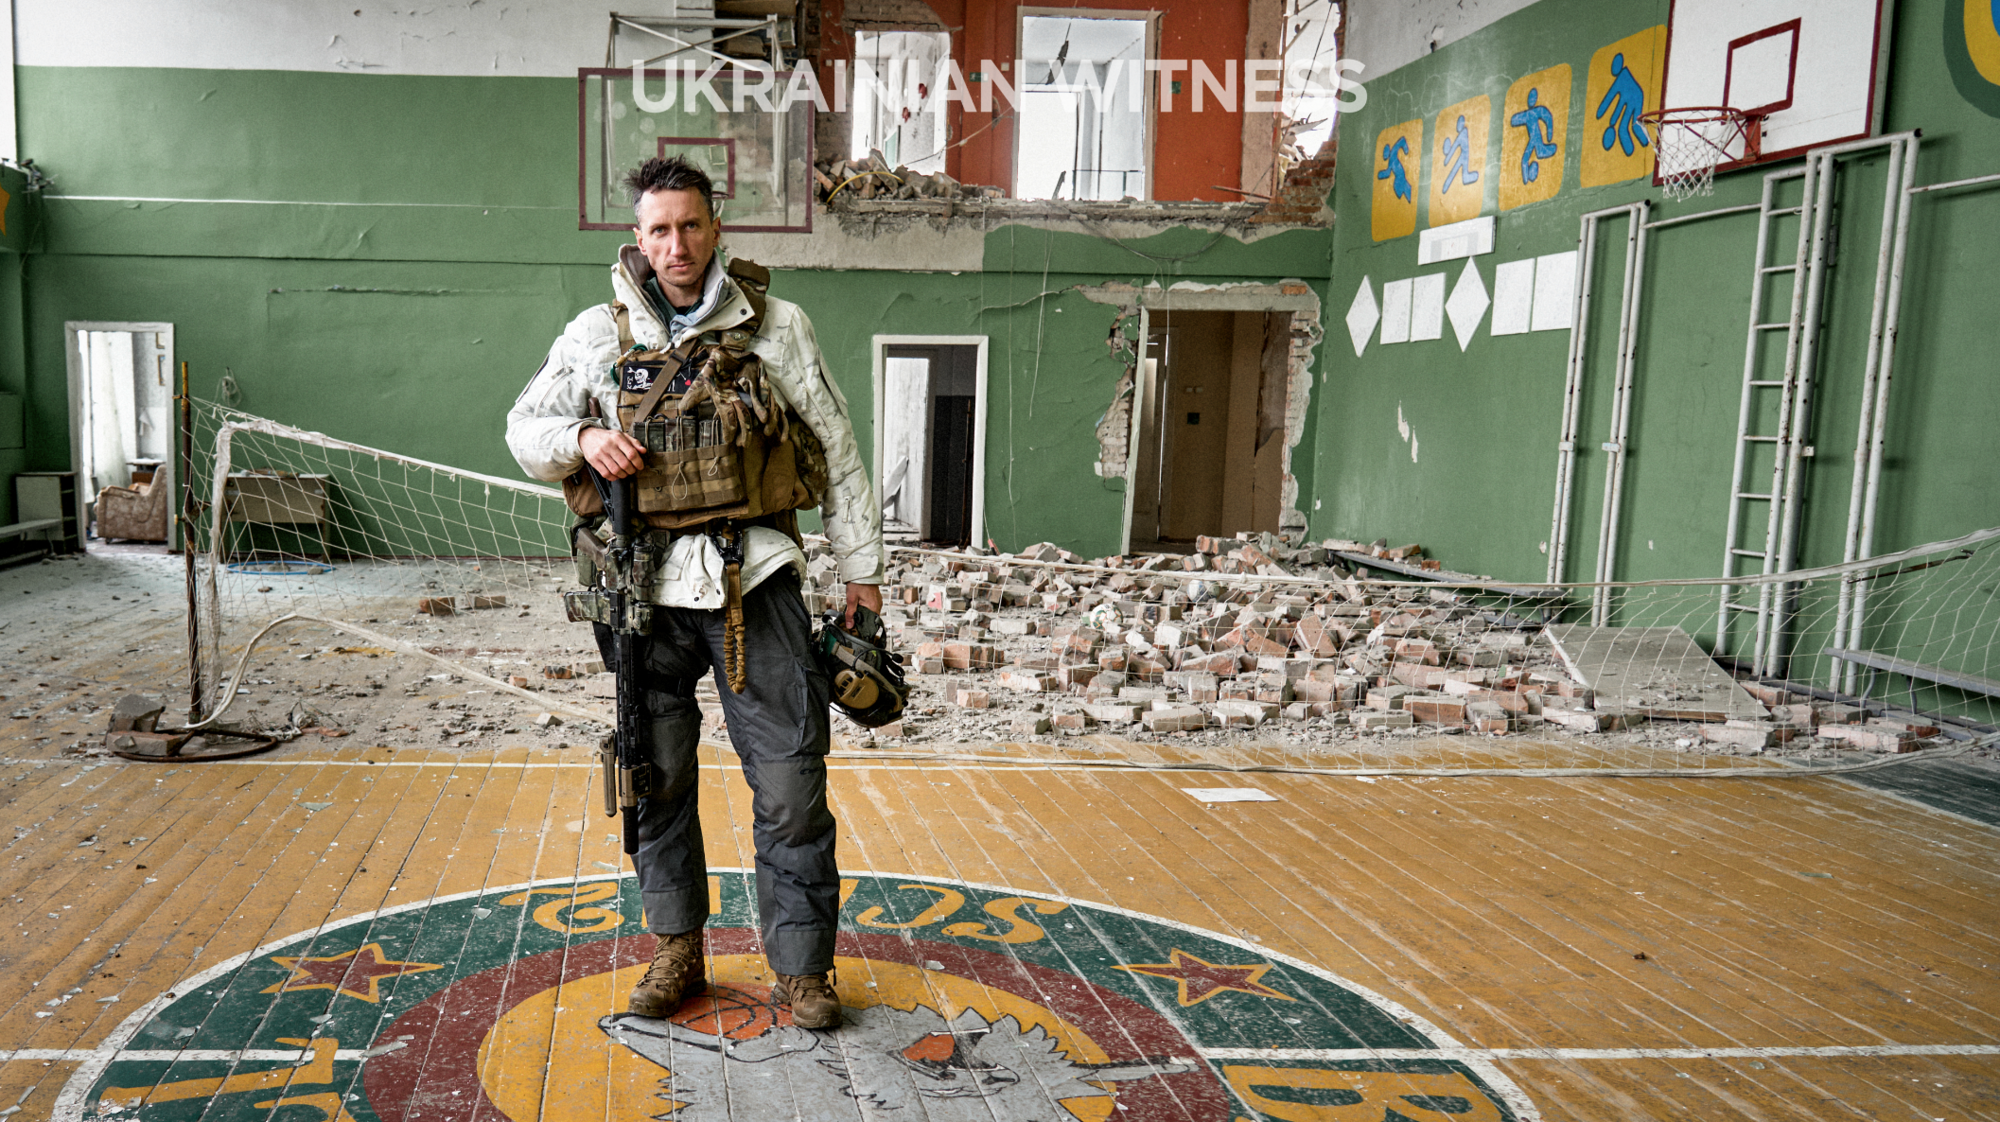 Стаховський сказав, чому небезпечно бути українцем, виклавши фотографії страшної атаки Росії під Куп'янськом